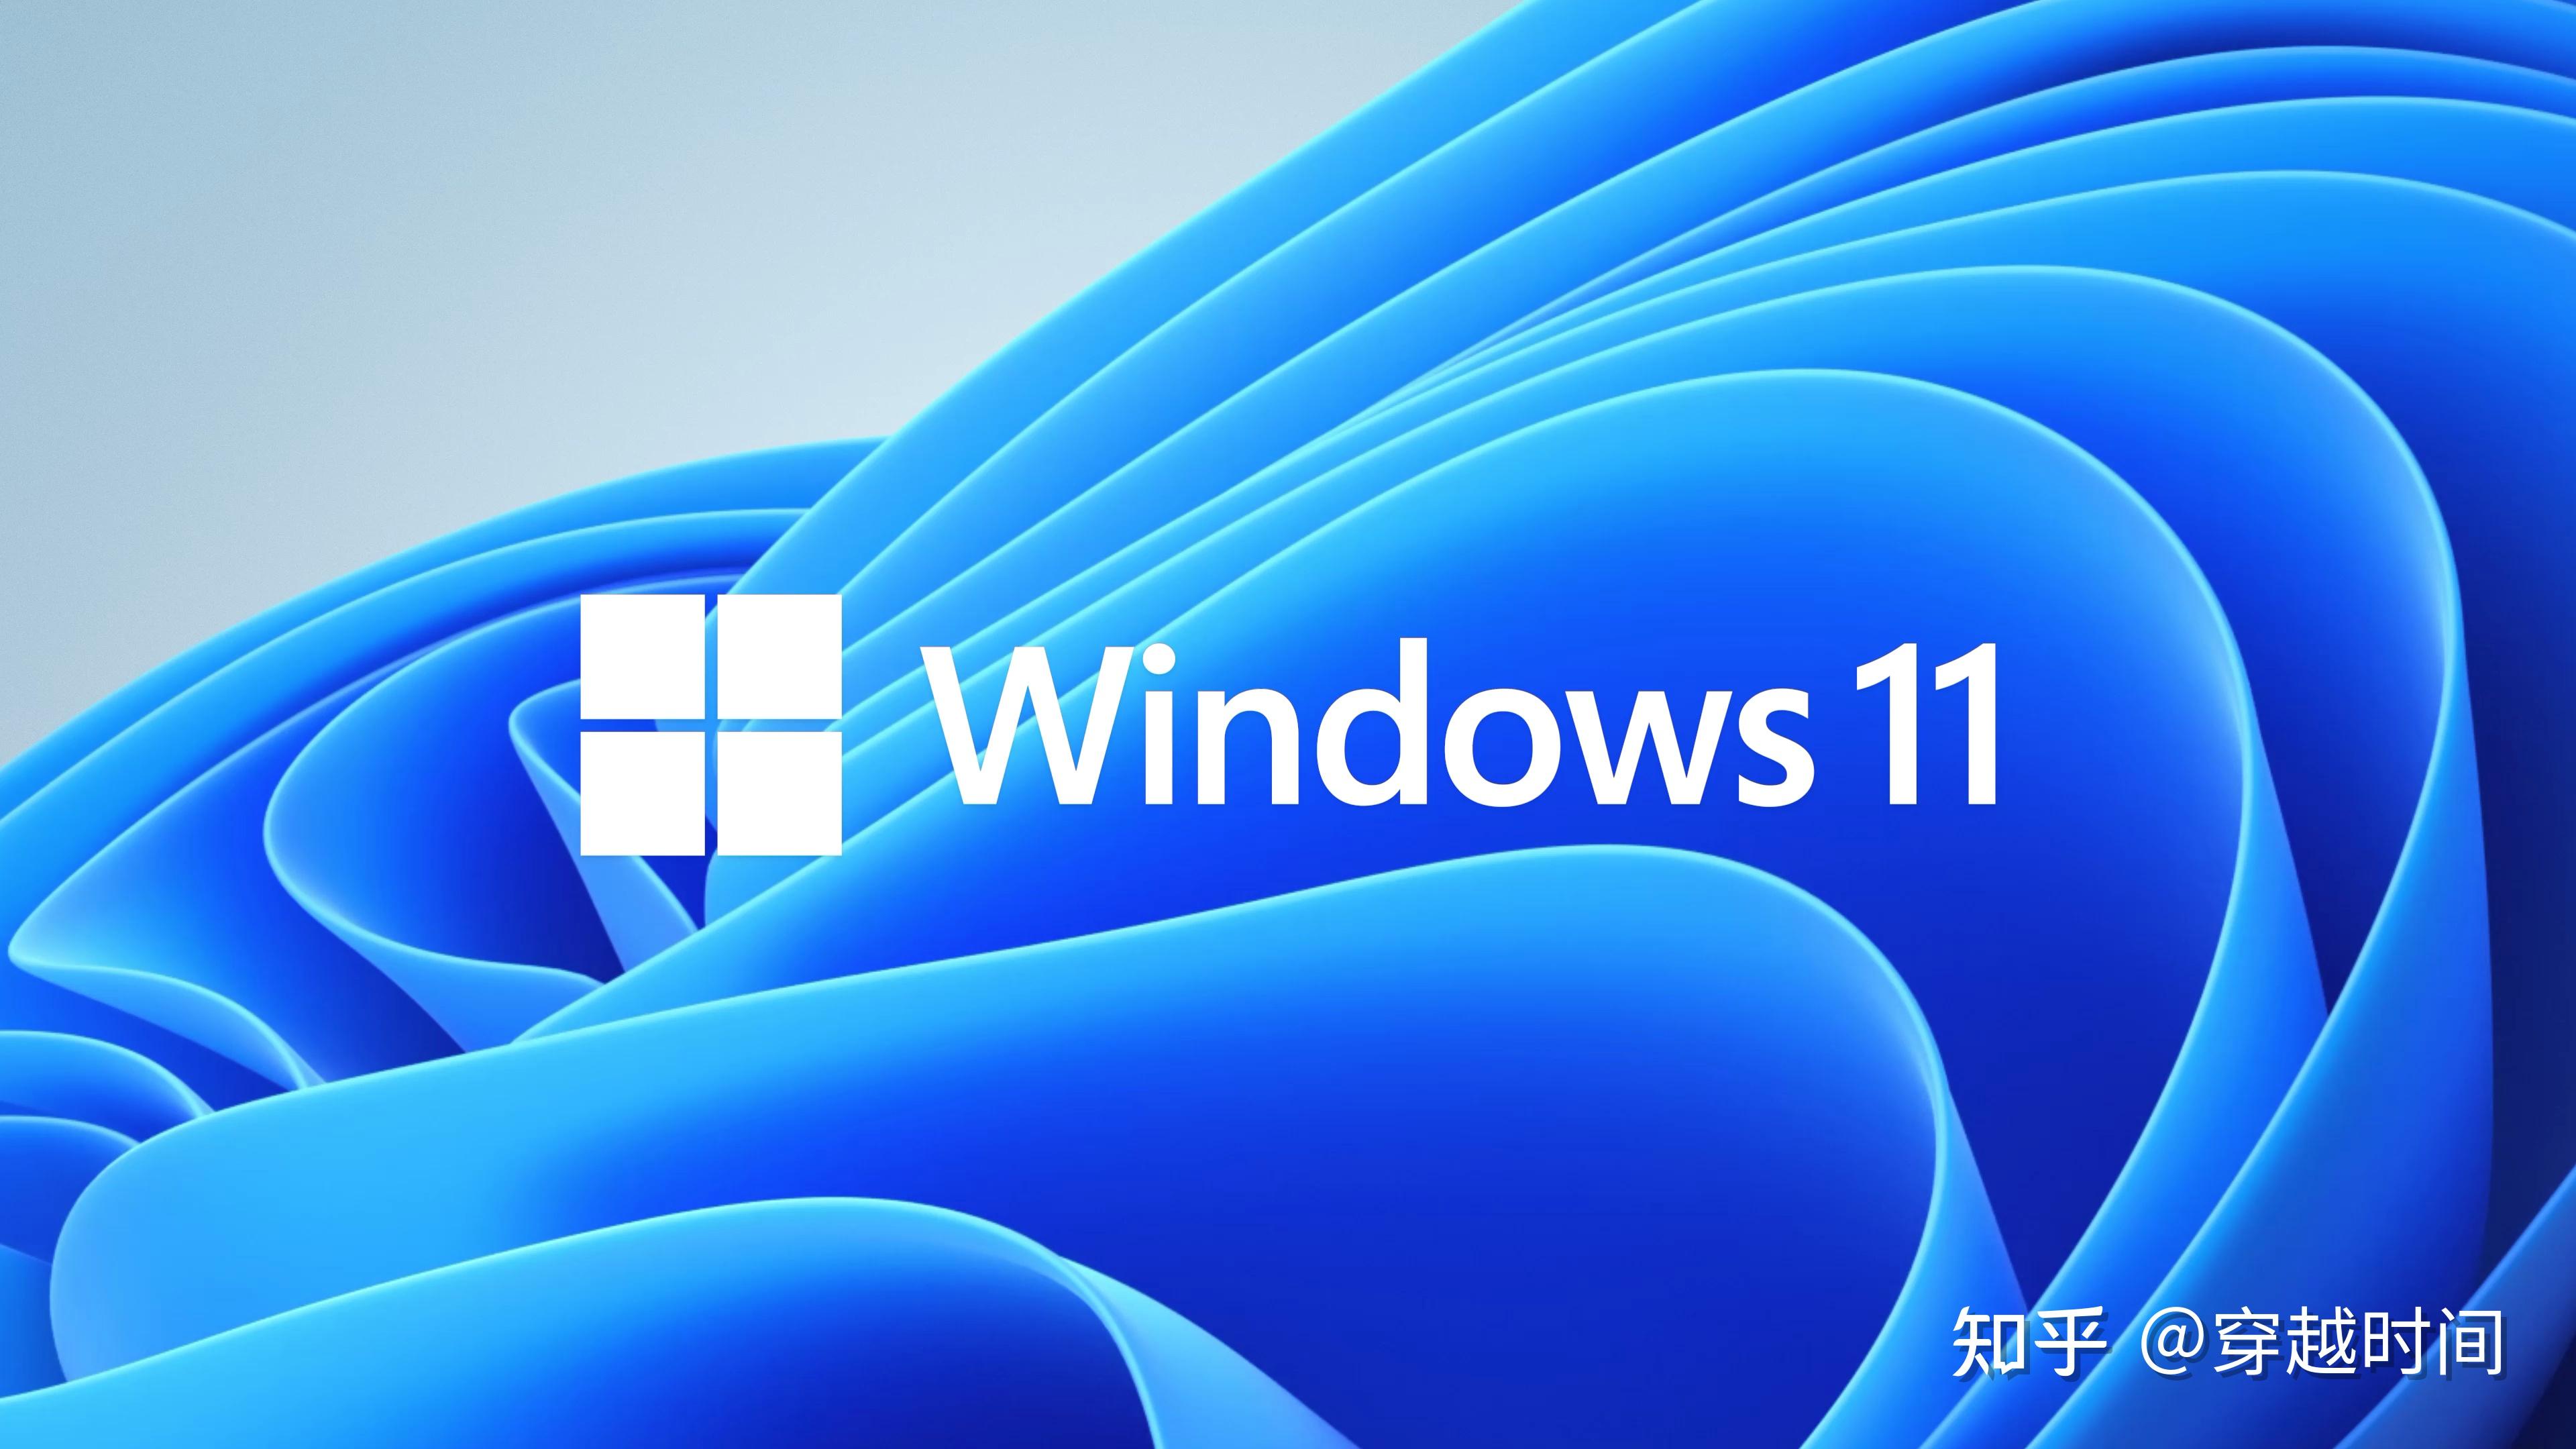 windows 11,2021年6月24日微软在发布会上推出的全新一代操作系统